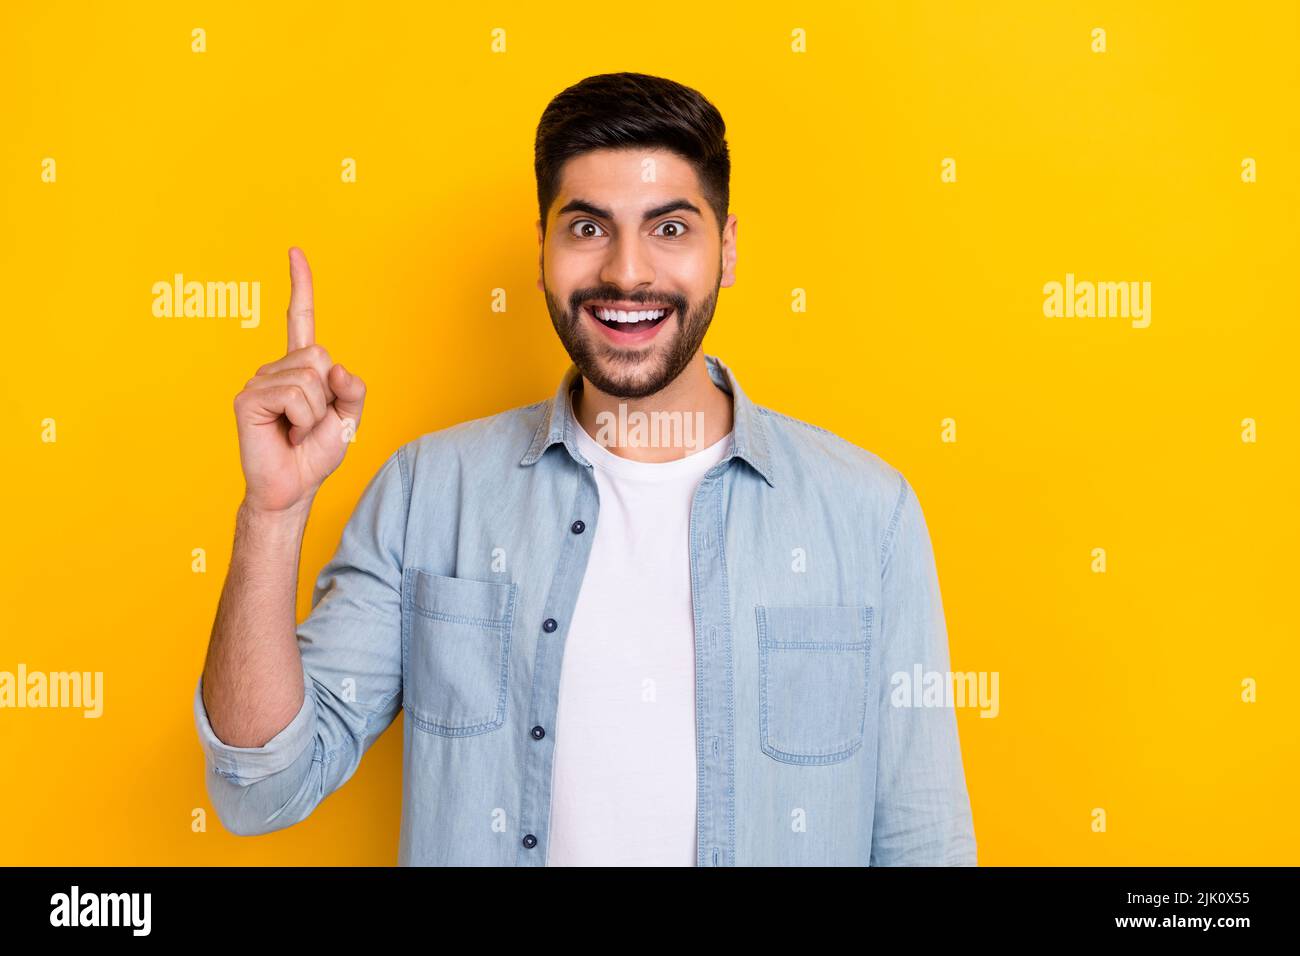 Foto von jungen Mann tragen Denim-Shirt bekam eine tolle Idee, wie mehr Anhänger youtube isoliert auf gelbem Hintergrund Stockfoto